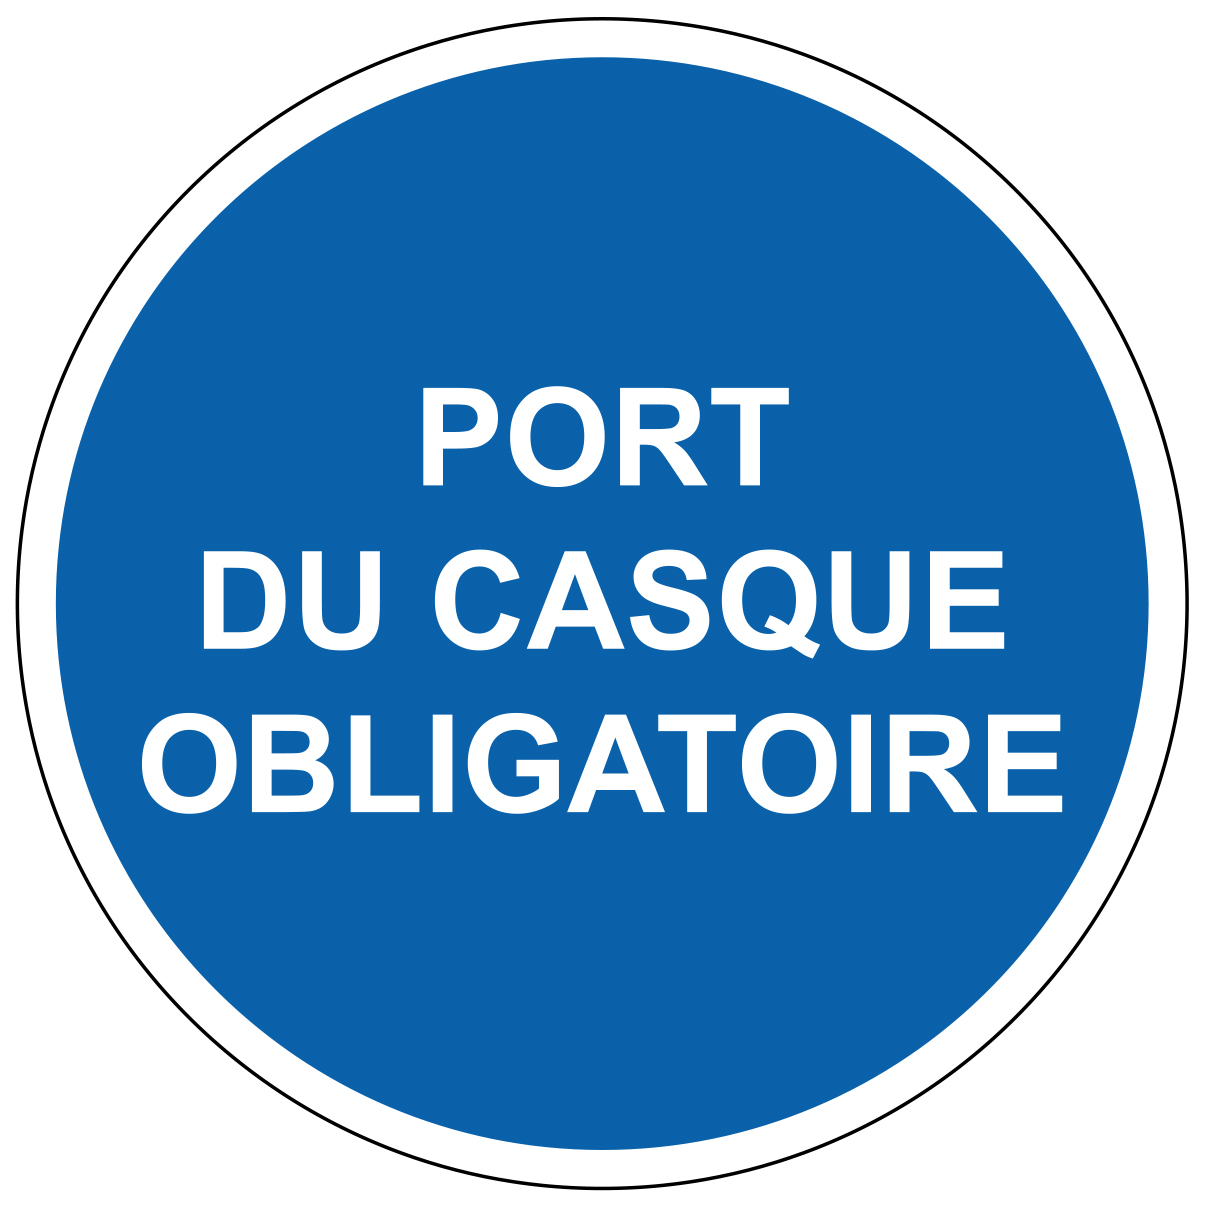 Port du casque obligatoire - M300 - étiquettes et panneaux d'obligation et de consigne